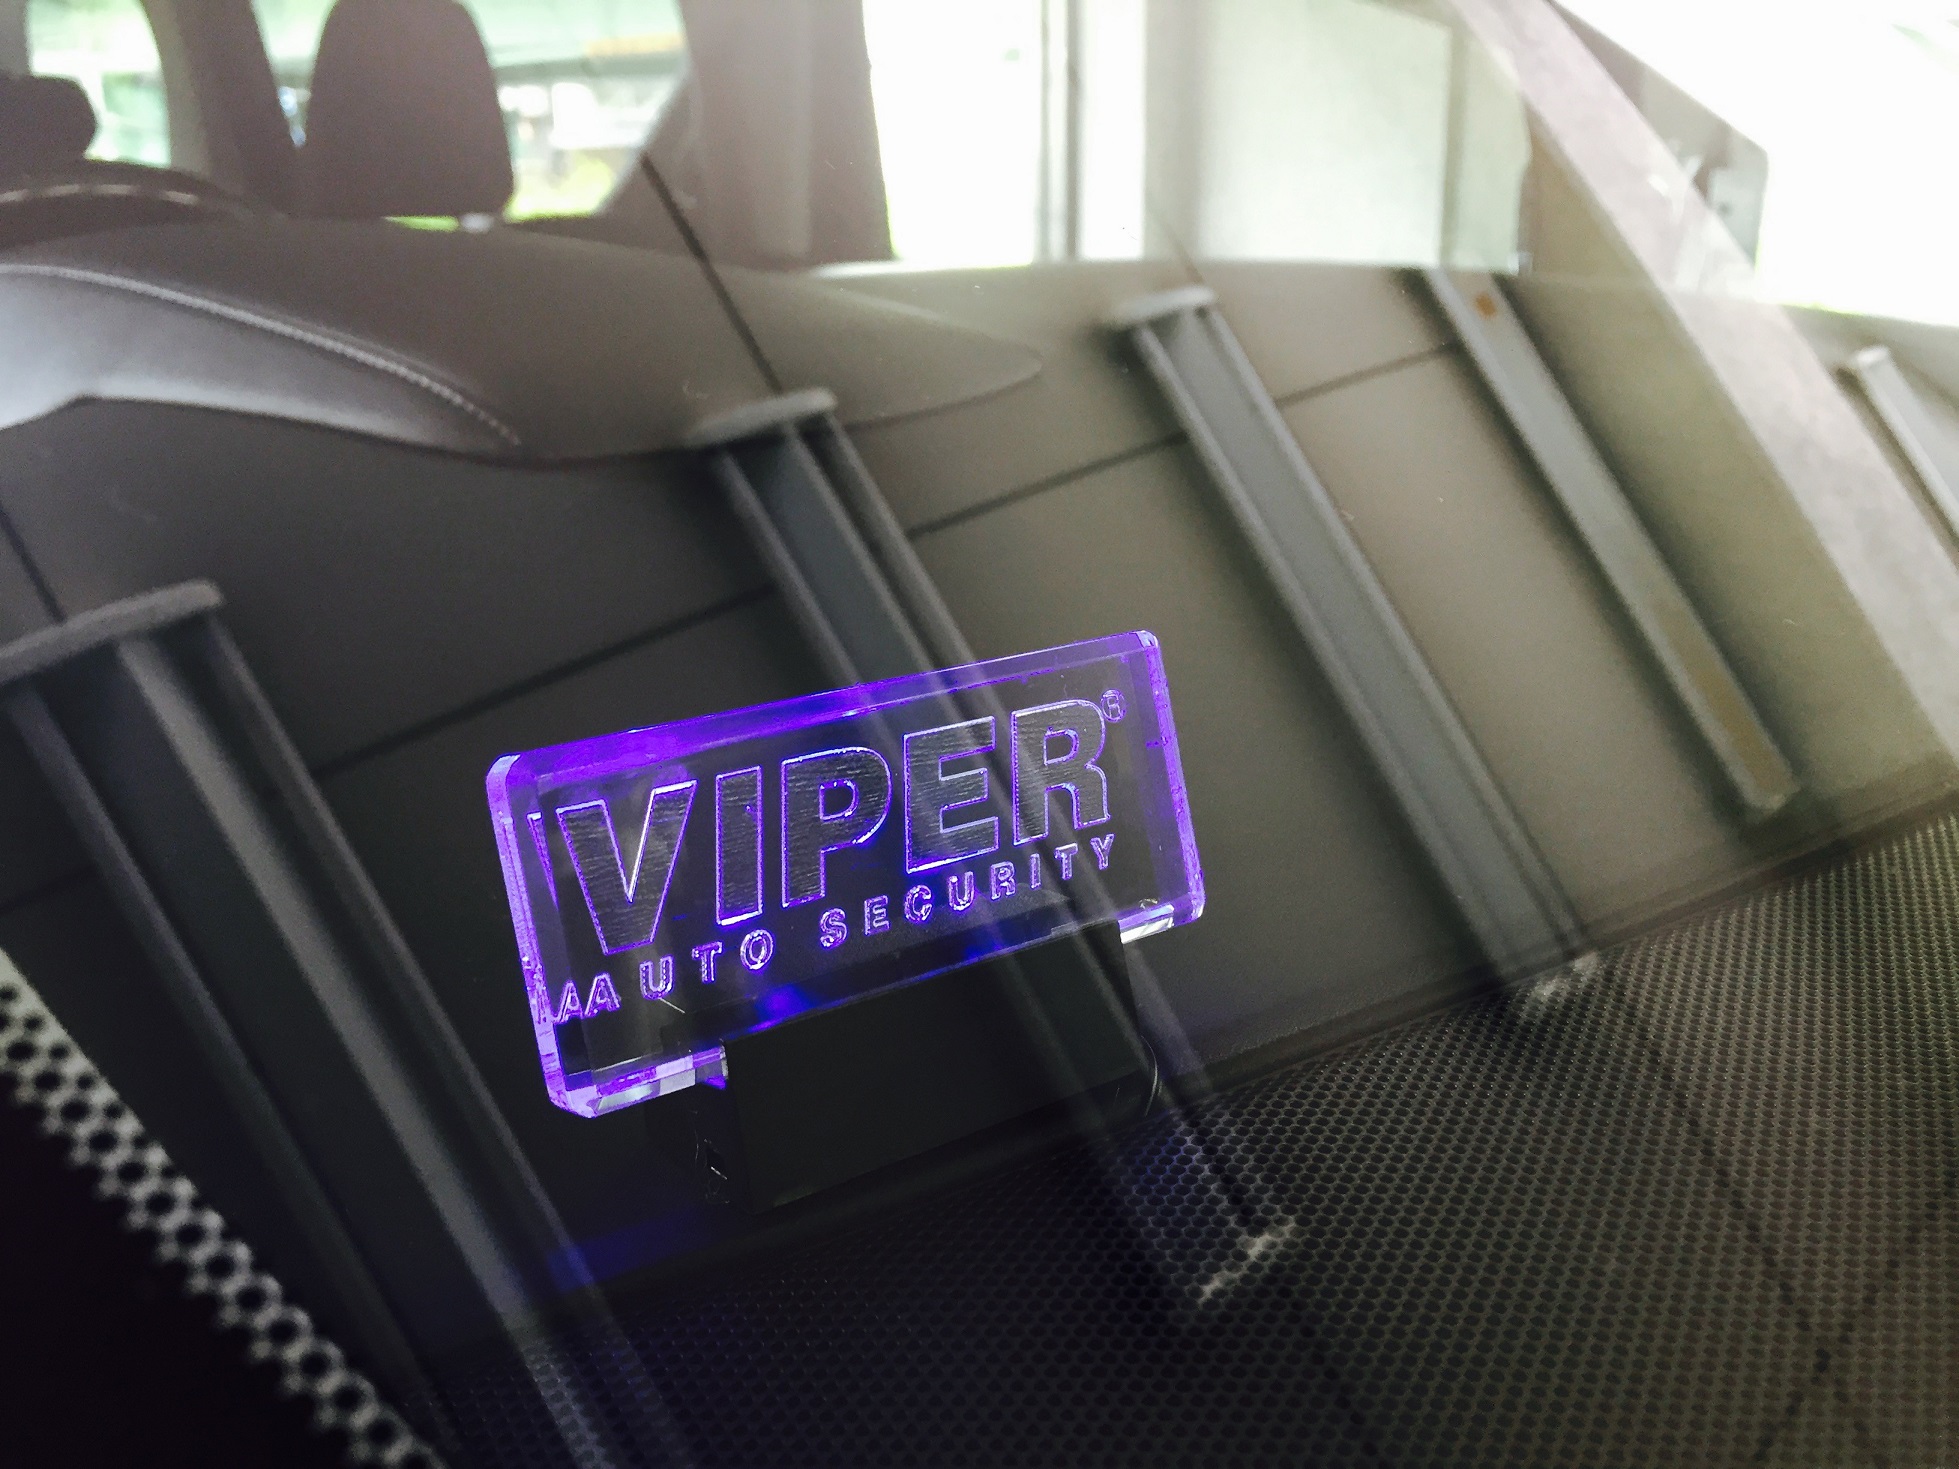 アクリルスキャナー「640V」｜VIPERカーセキュリティ正規販売【東京都第1位】特価キャンペーン中